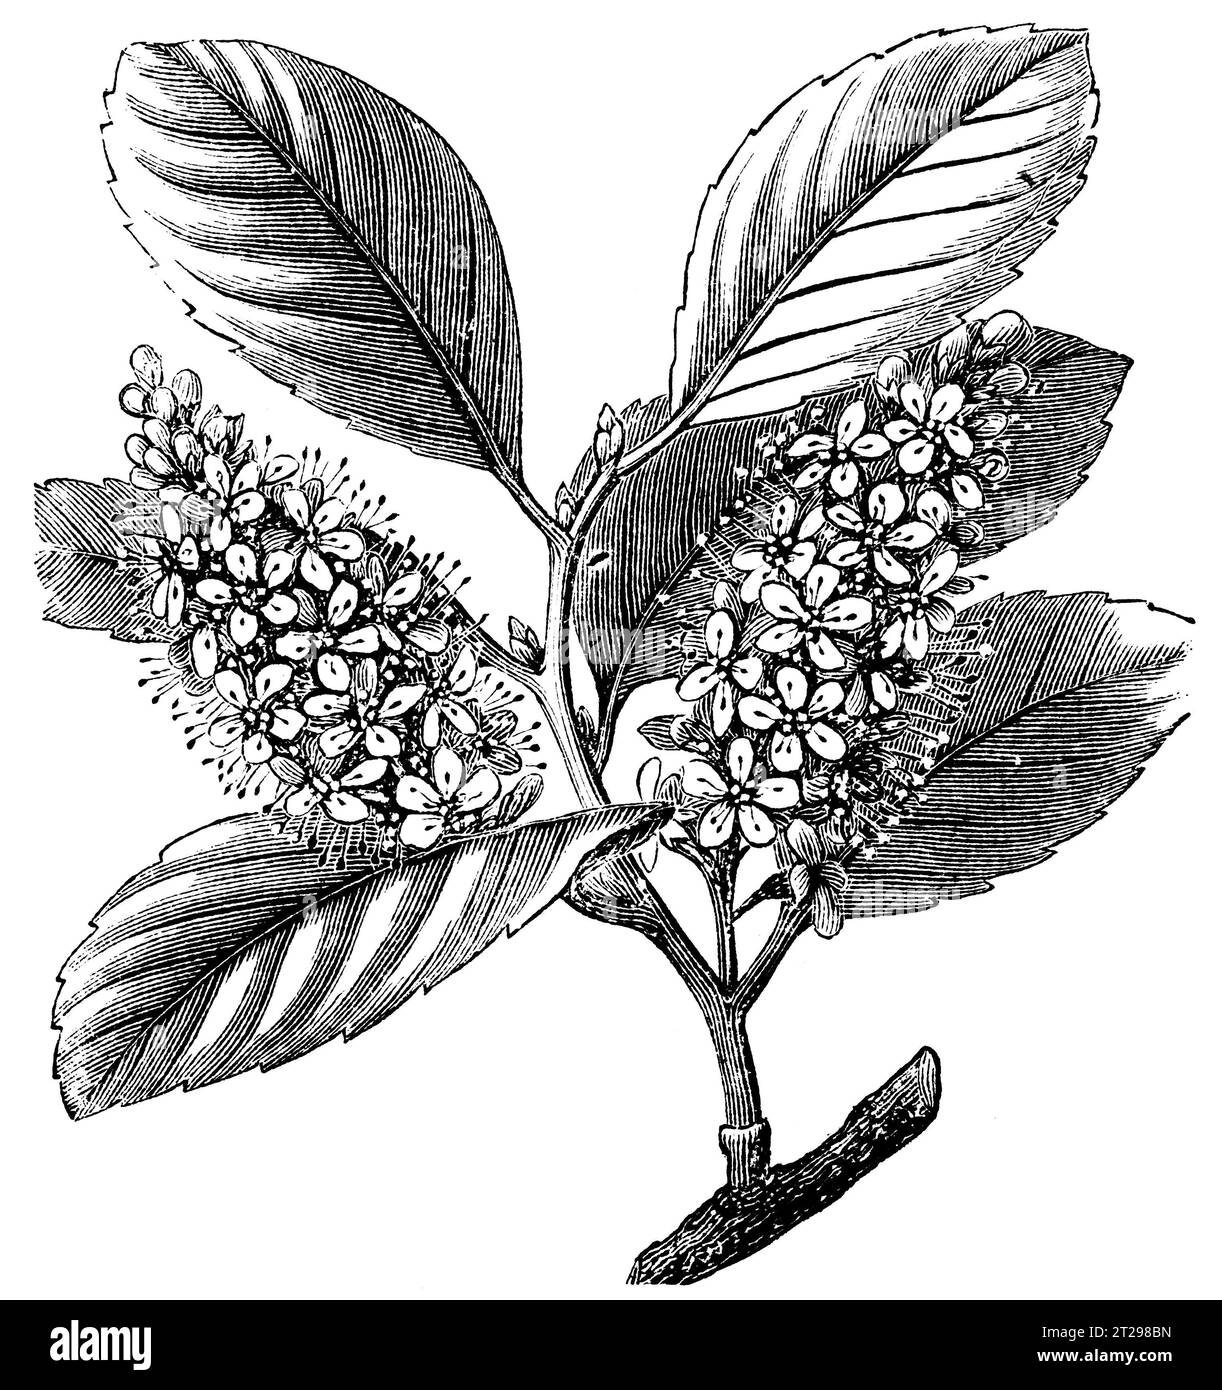 Prunus laurocerasus, illustration restaurée numériquement de 'The Condensed American Encyclopedia', publiée au 19e siècle. Banque D'Images